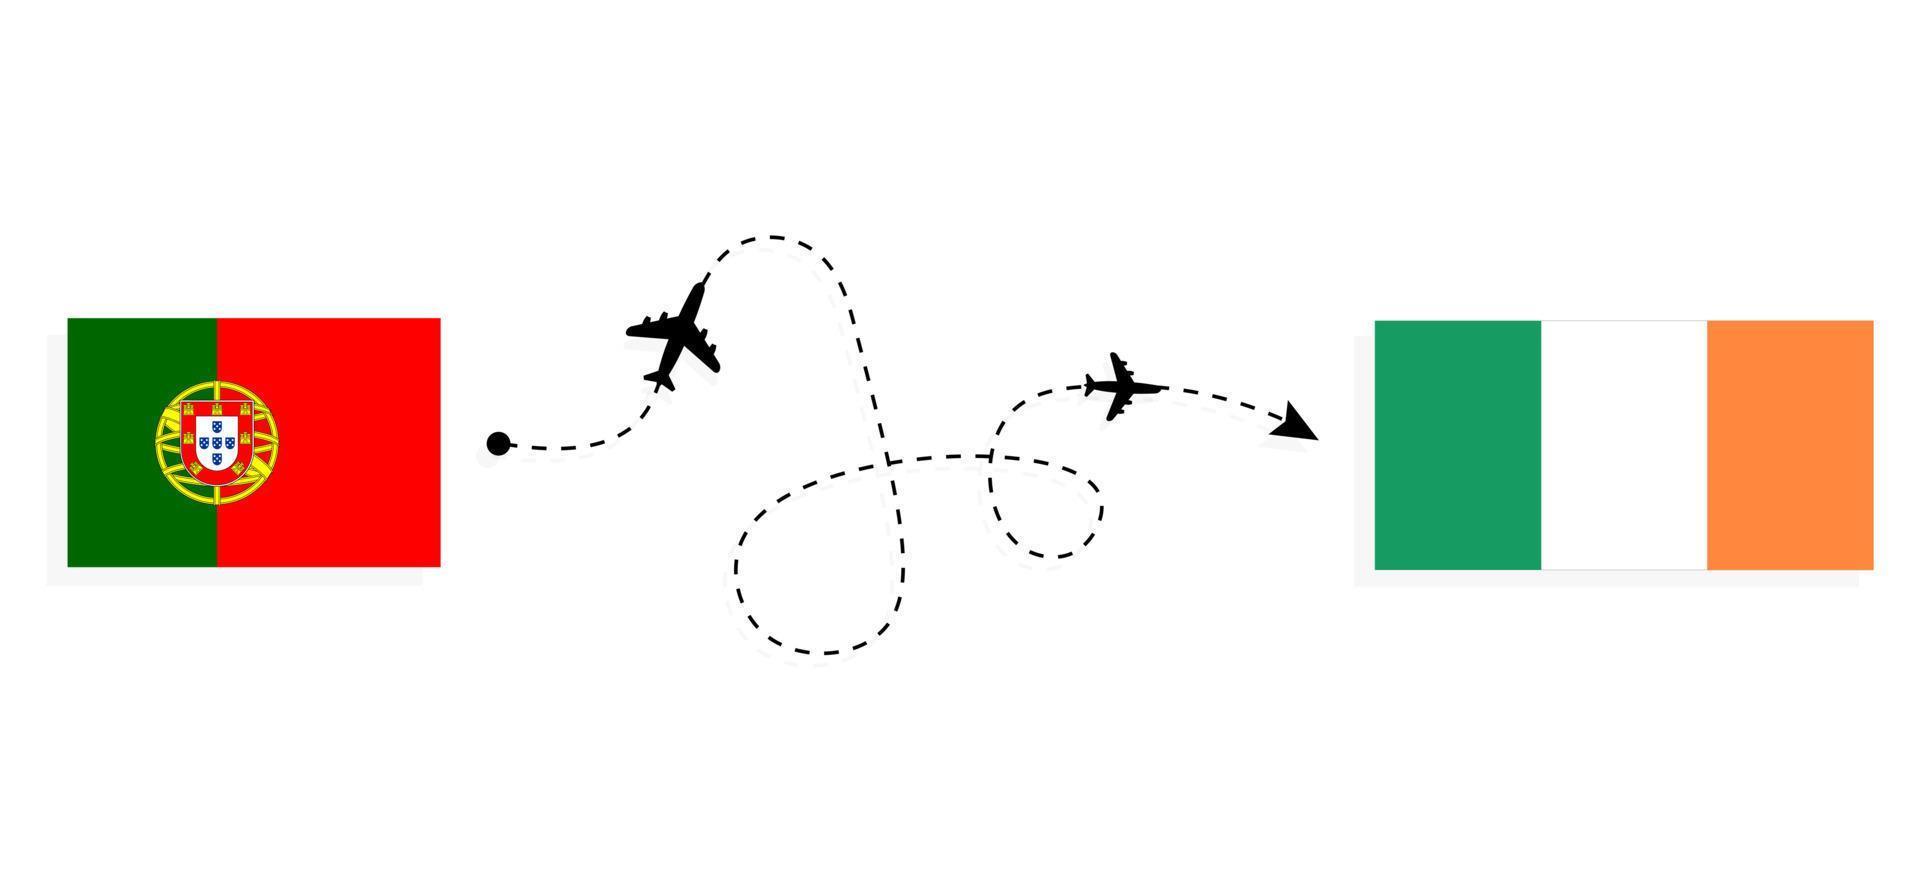 vlucht en reis van portugal naar ierland per reisconcept voor passagiersvliegtuigen vector